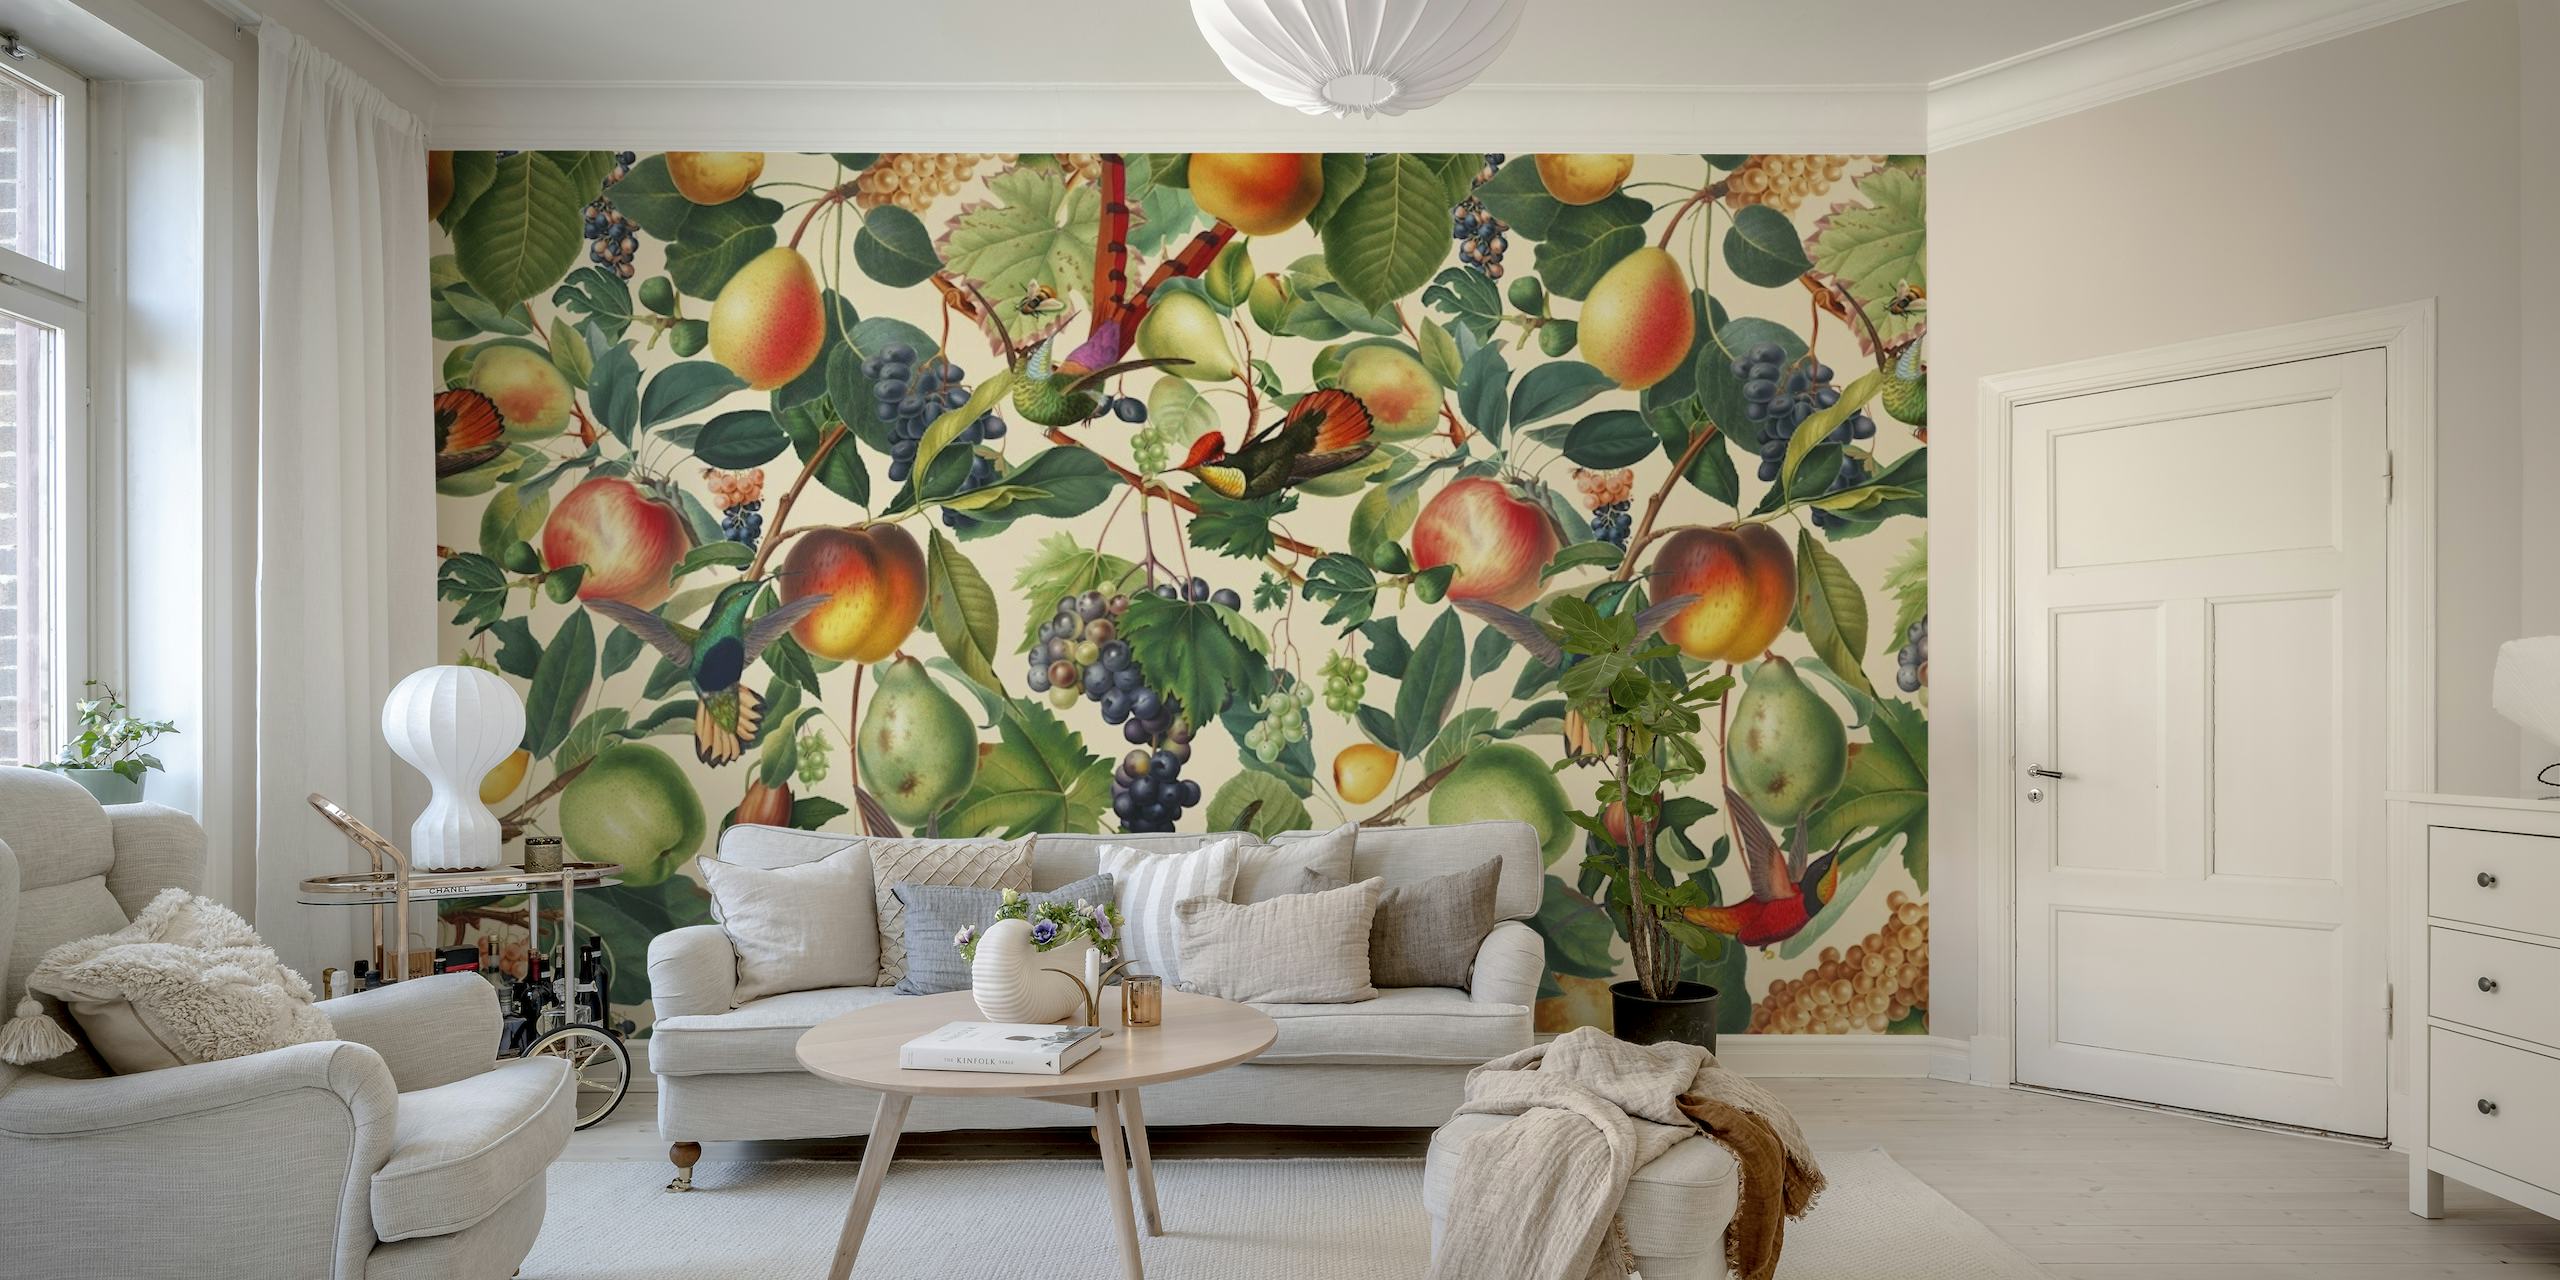 Vægmaleri med sommertema med en række frugter som ferskner og druer midt i grønne blade